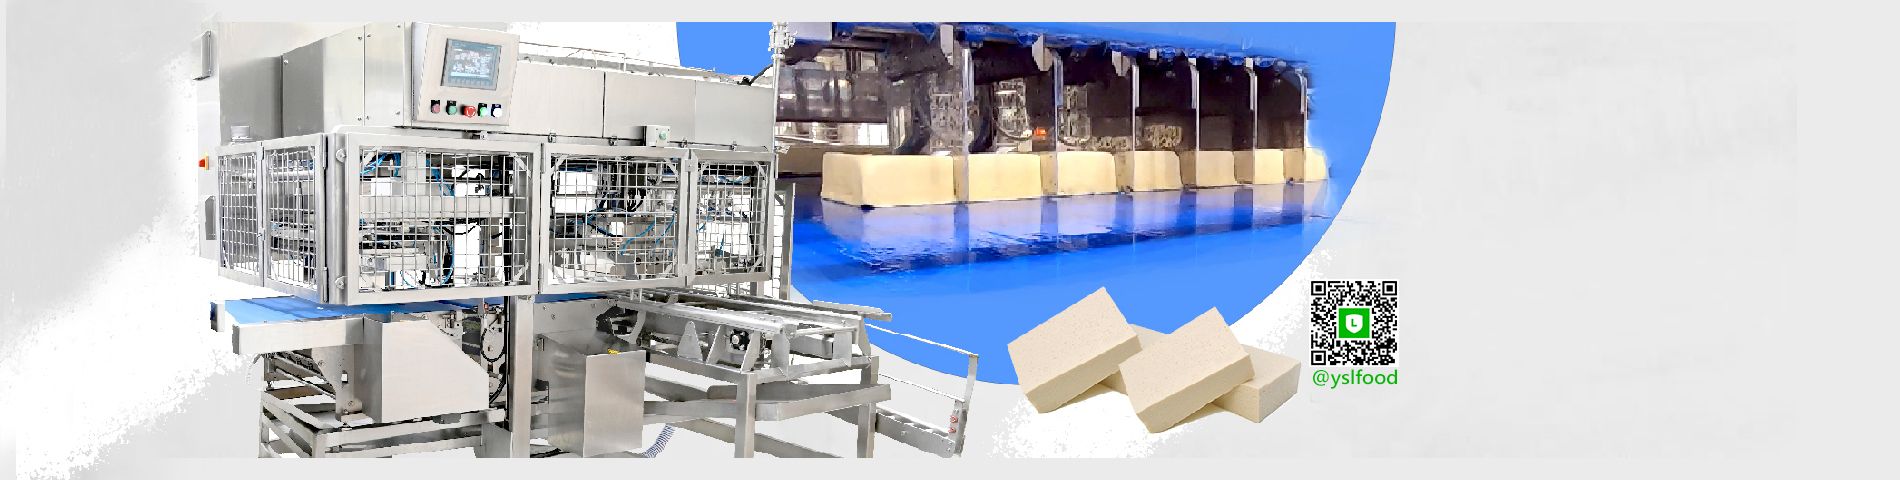 豆腐自动切割机 设定尺寸、切送入盒 安全、减少人力及劳动成本